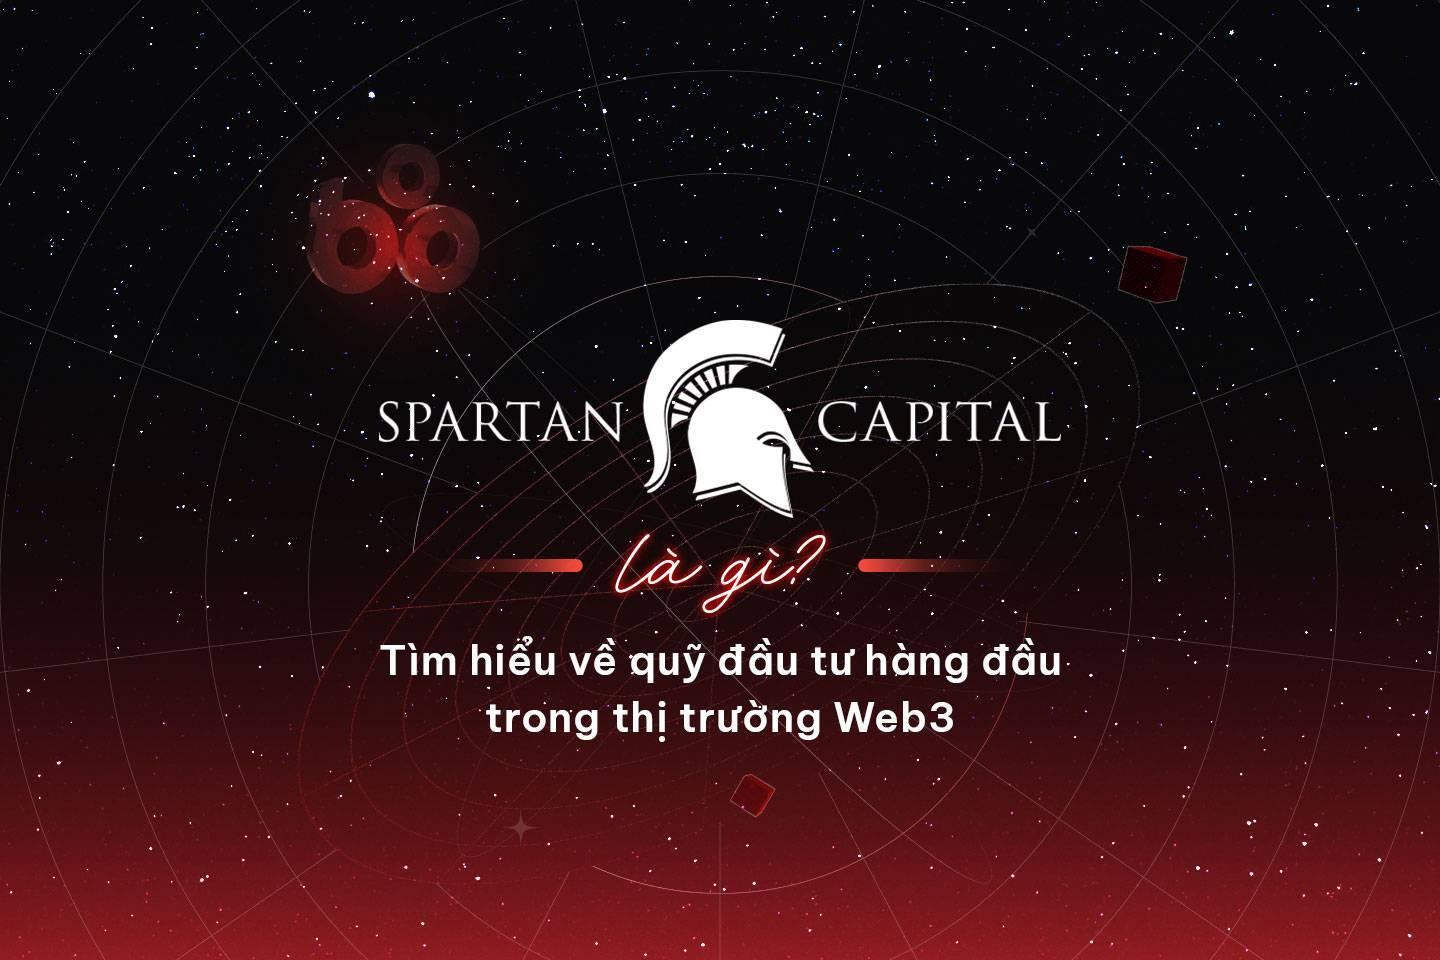 spartan-capital-la-gi-tim-hieu-ve-quy-dau-tu-hang-dau-trong-thi-truong-web3